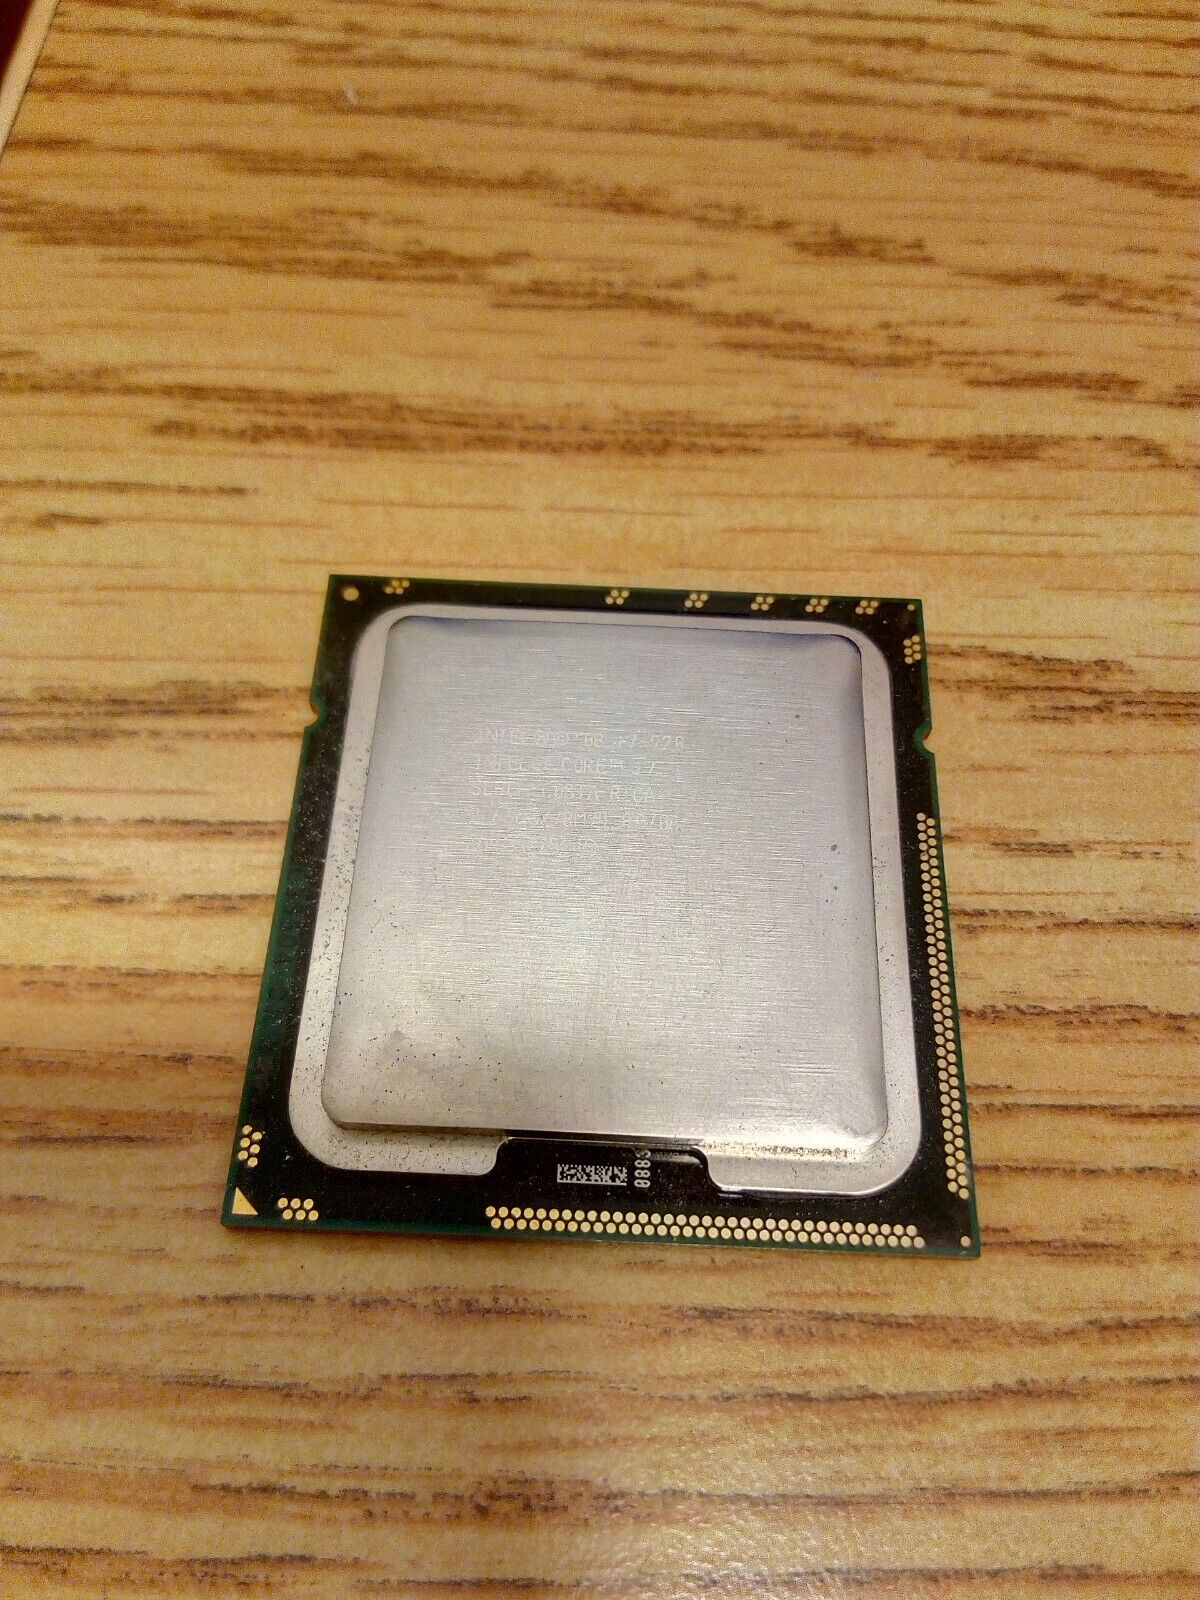 1X Intel i7-920 SLBCH  2.66GHz CPU 8MB LGA1366 Desktop Processor